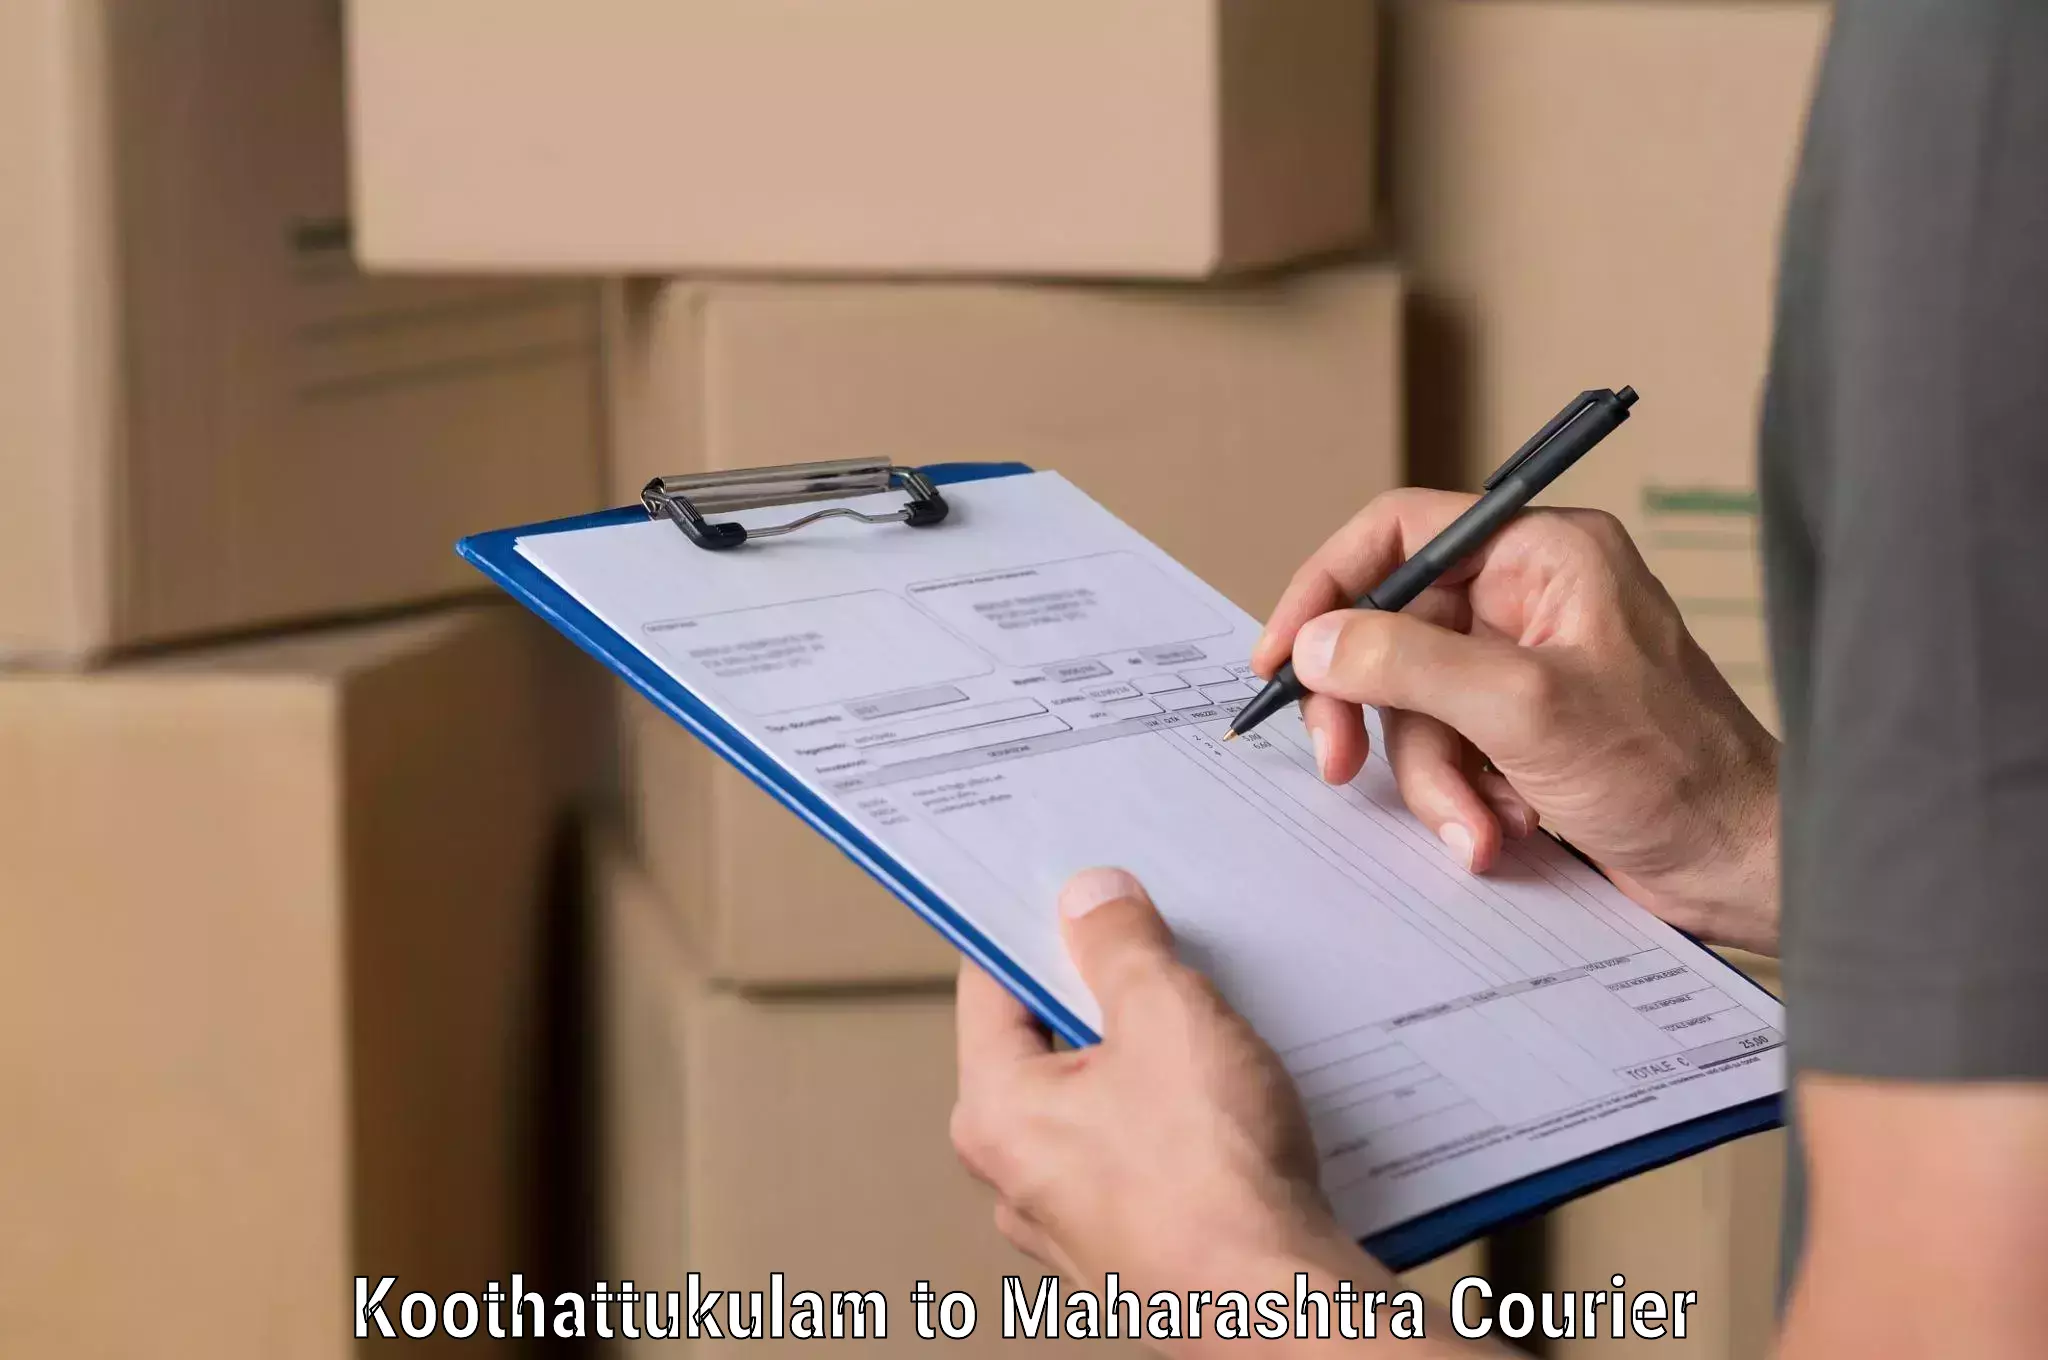 Express postal services Koothattukulam to Daund